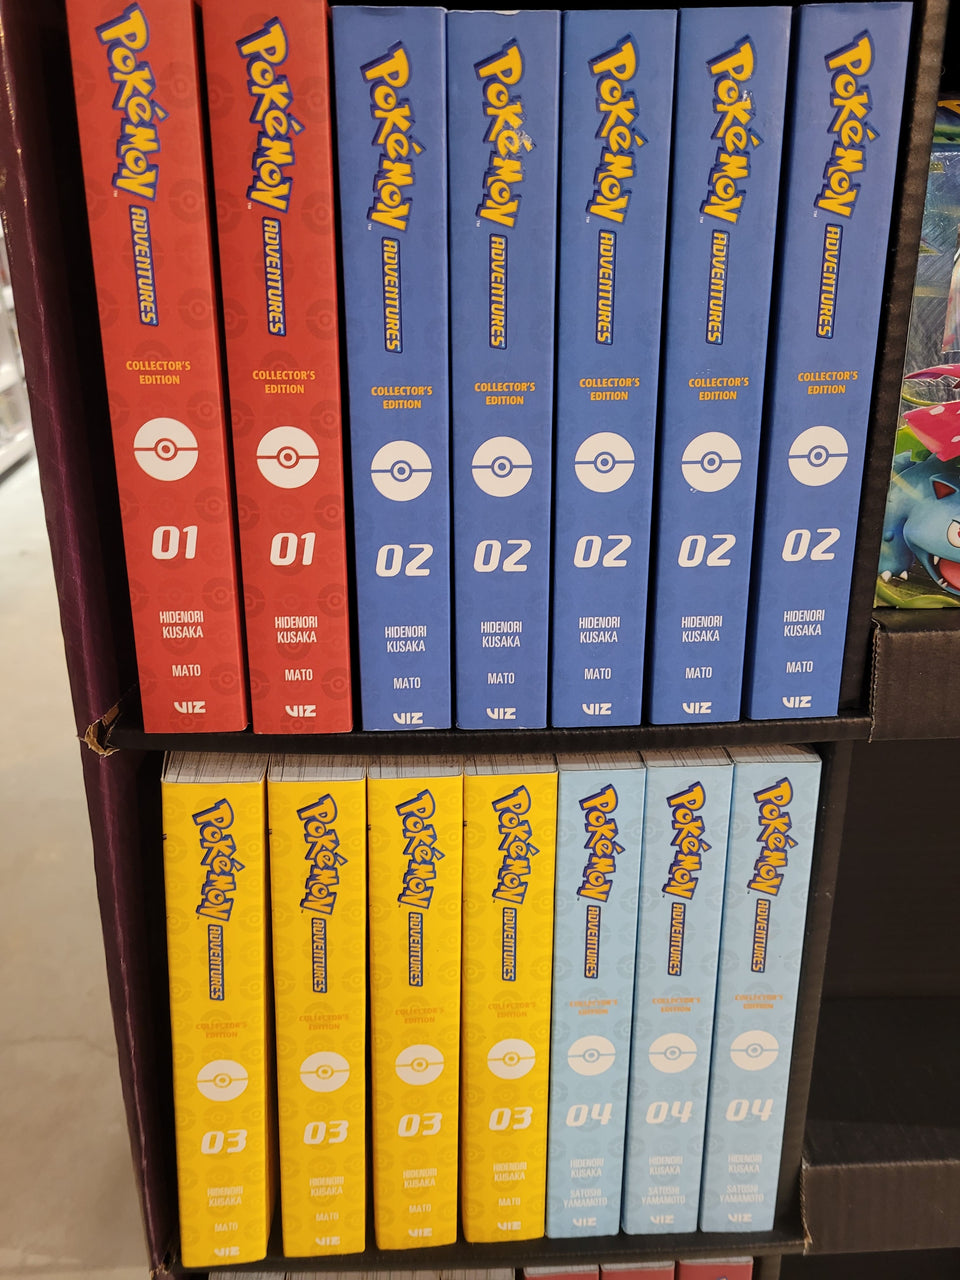 Manga, Collections